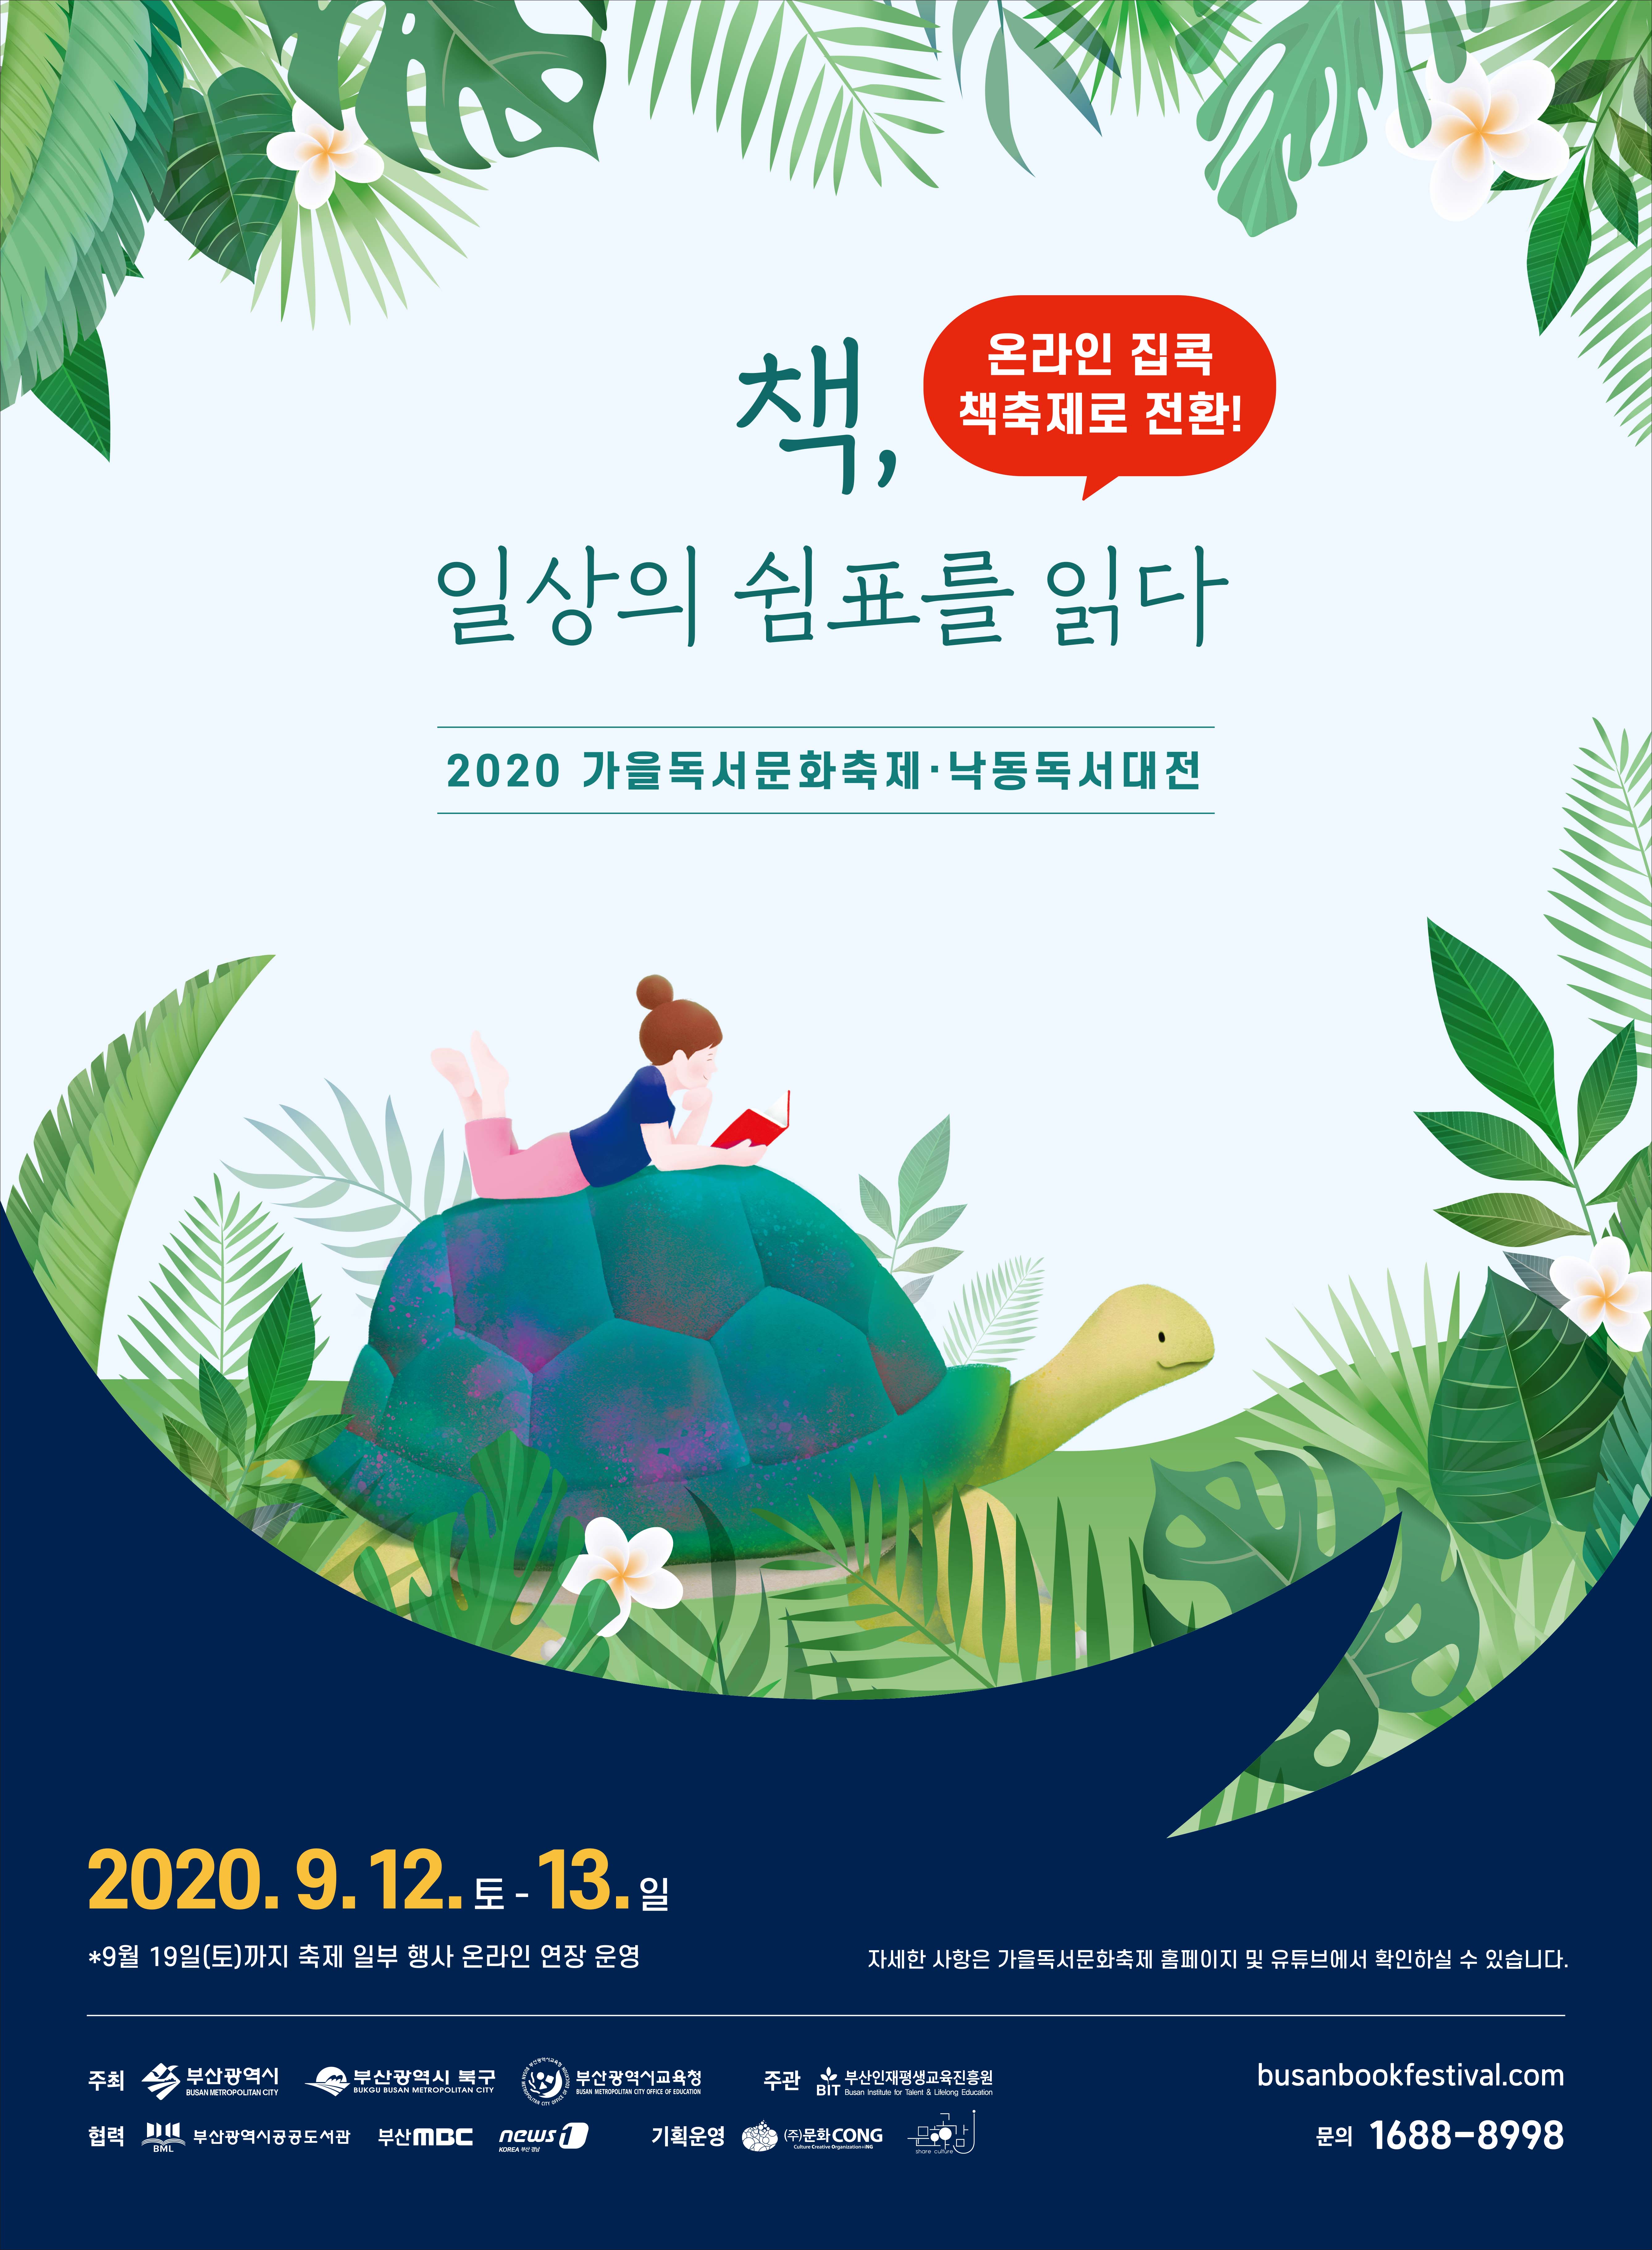 2020년 가을독서문화축제 온라인 개최 안내